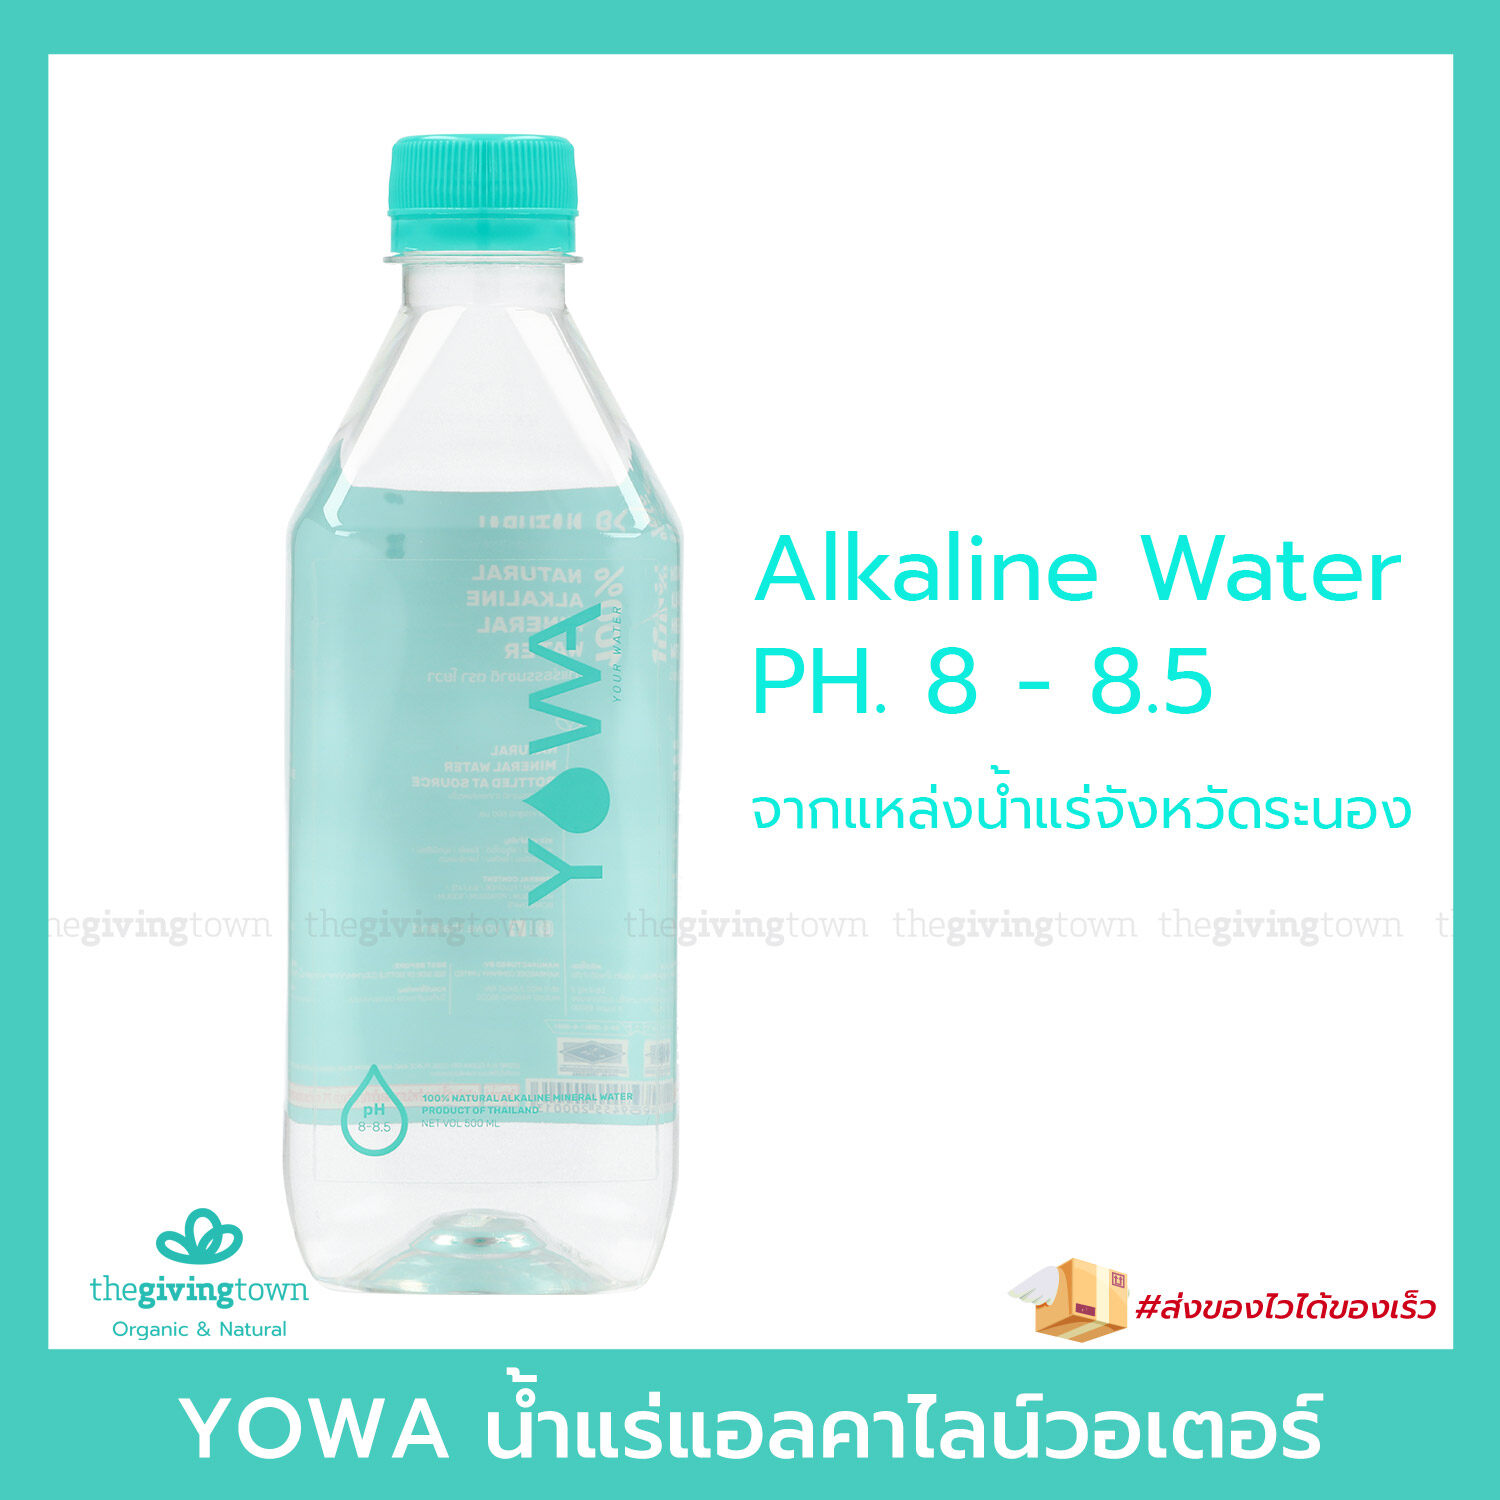 YOWA น้ำแร่แอลคาไลน์วอเตอร์ Natural Alkaline Mineral Water น้ำด่าง PH 8-8.5 spring water. น้ำโยวา น้ำแร่ น้ำด่าง น้ำแอลคาไลน์ น้ำอัลคาไลน์